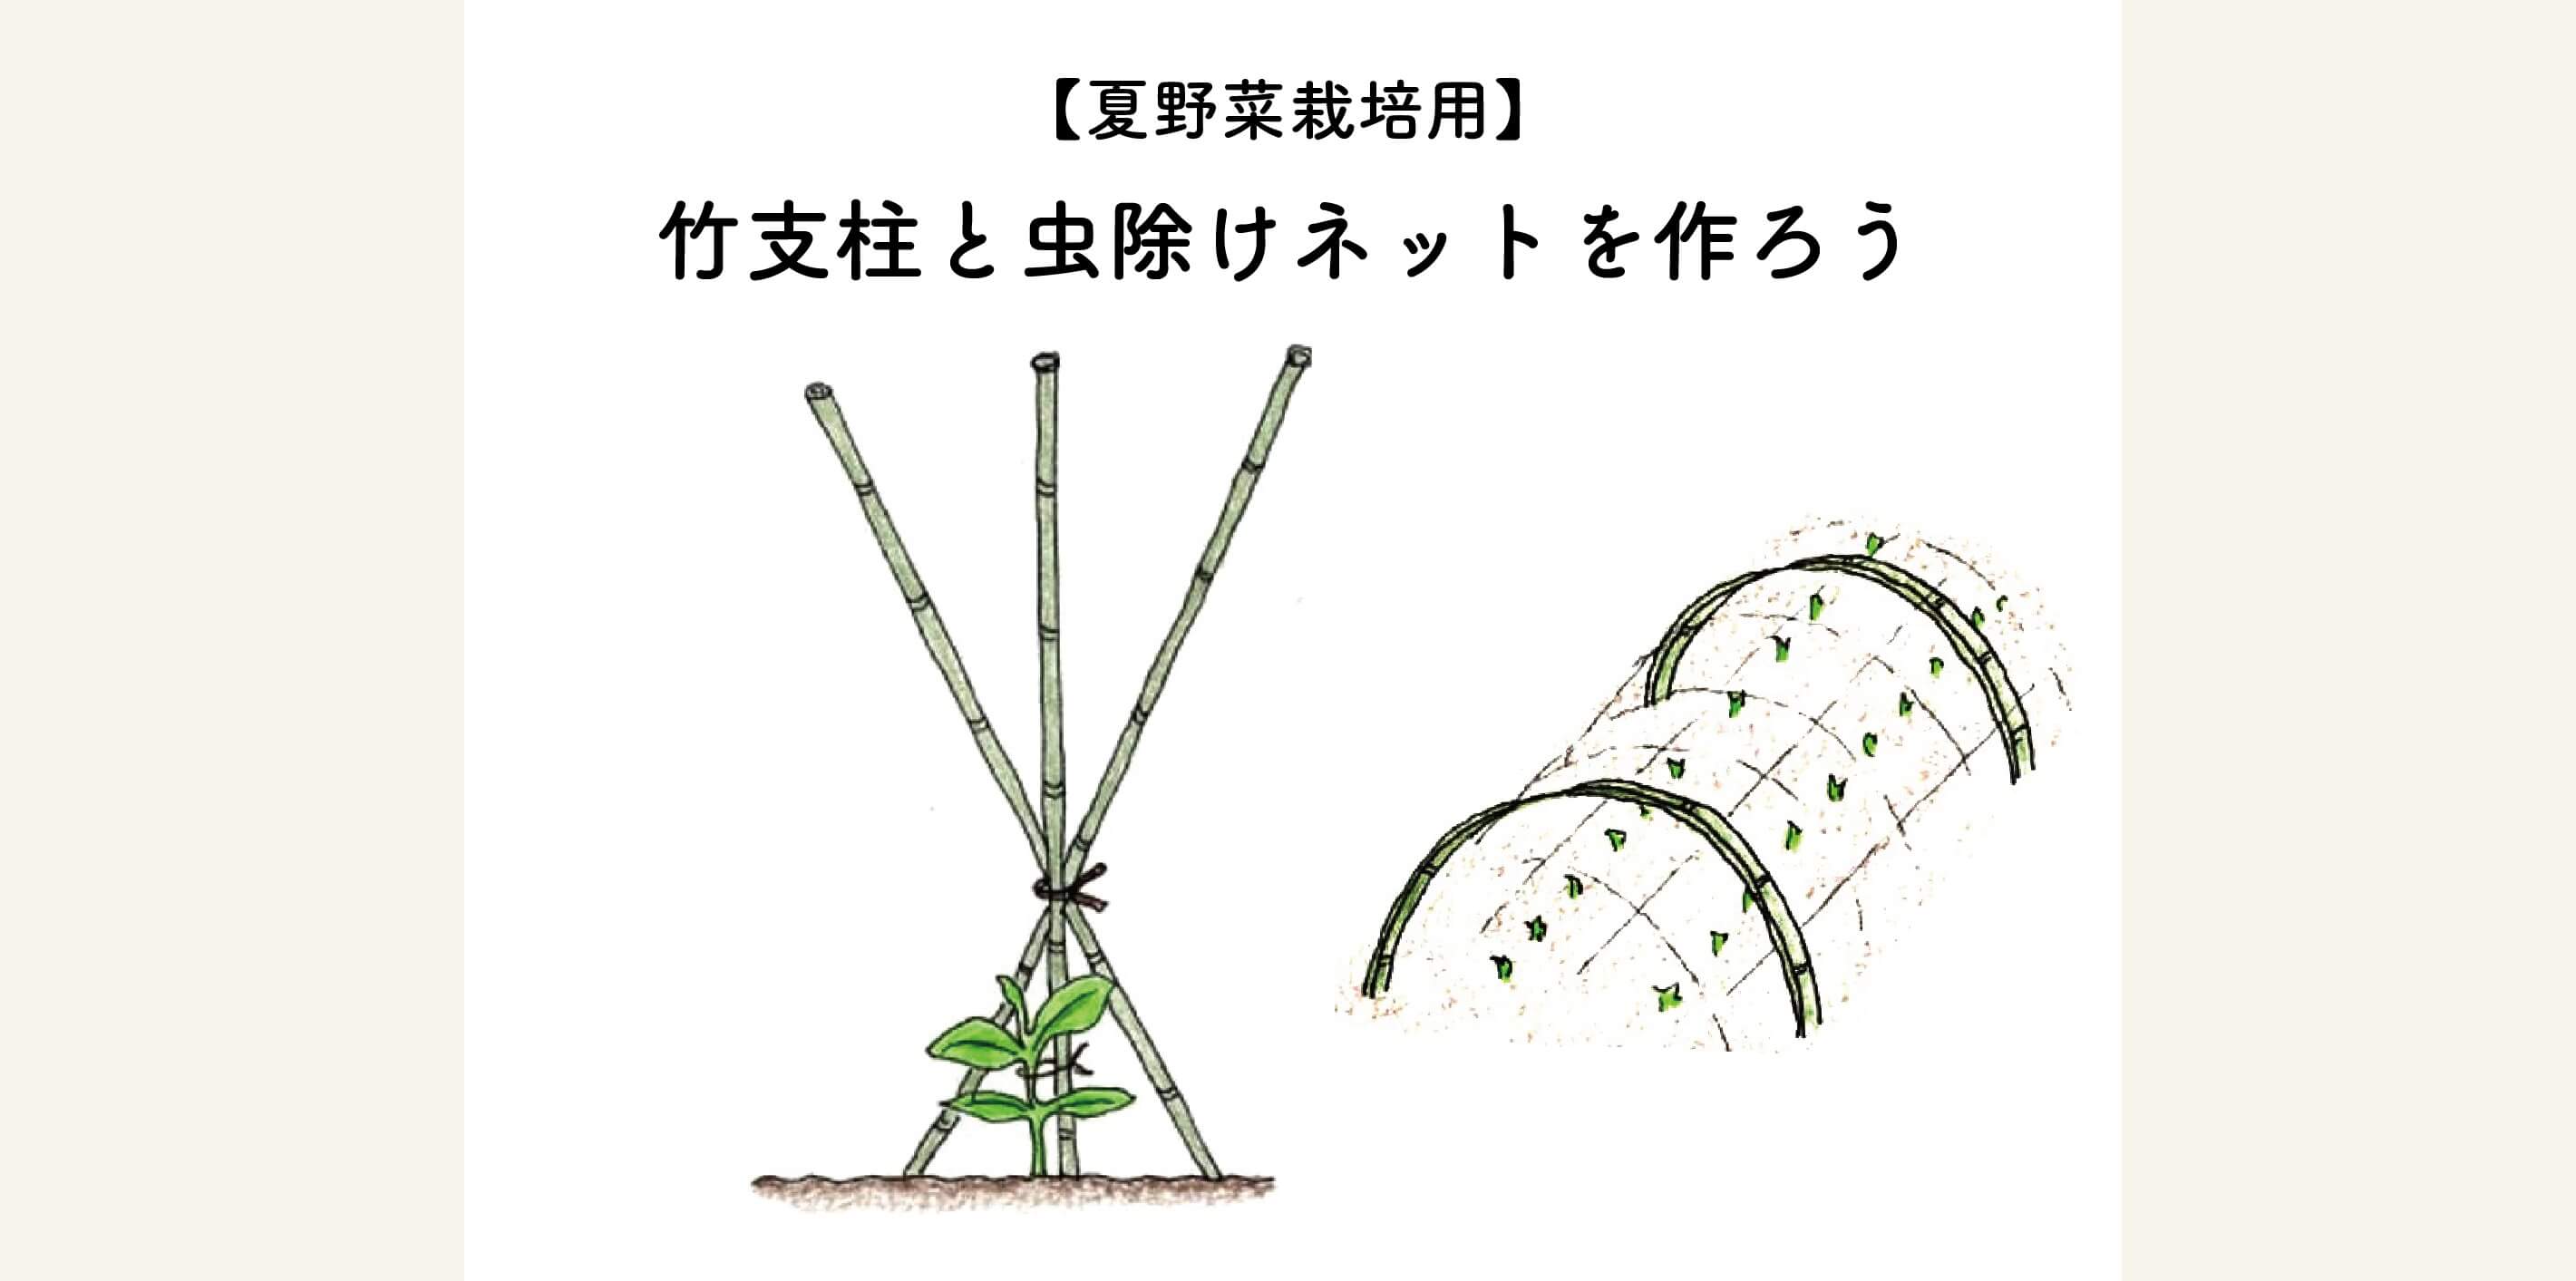 【見た目も綺麗で美しい】夏野菜栽培用の竹支柱と虫よけネットをつくろう！